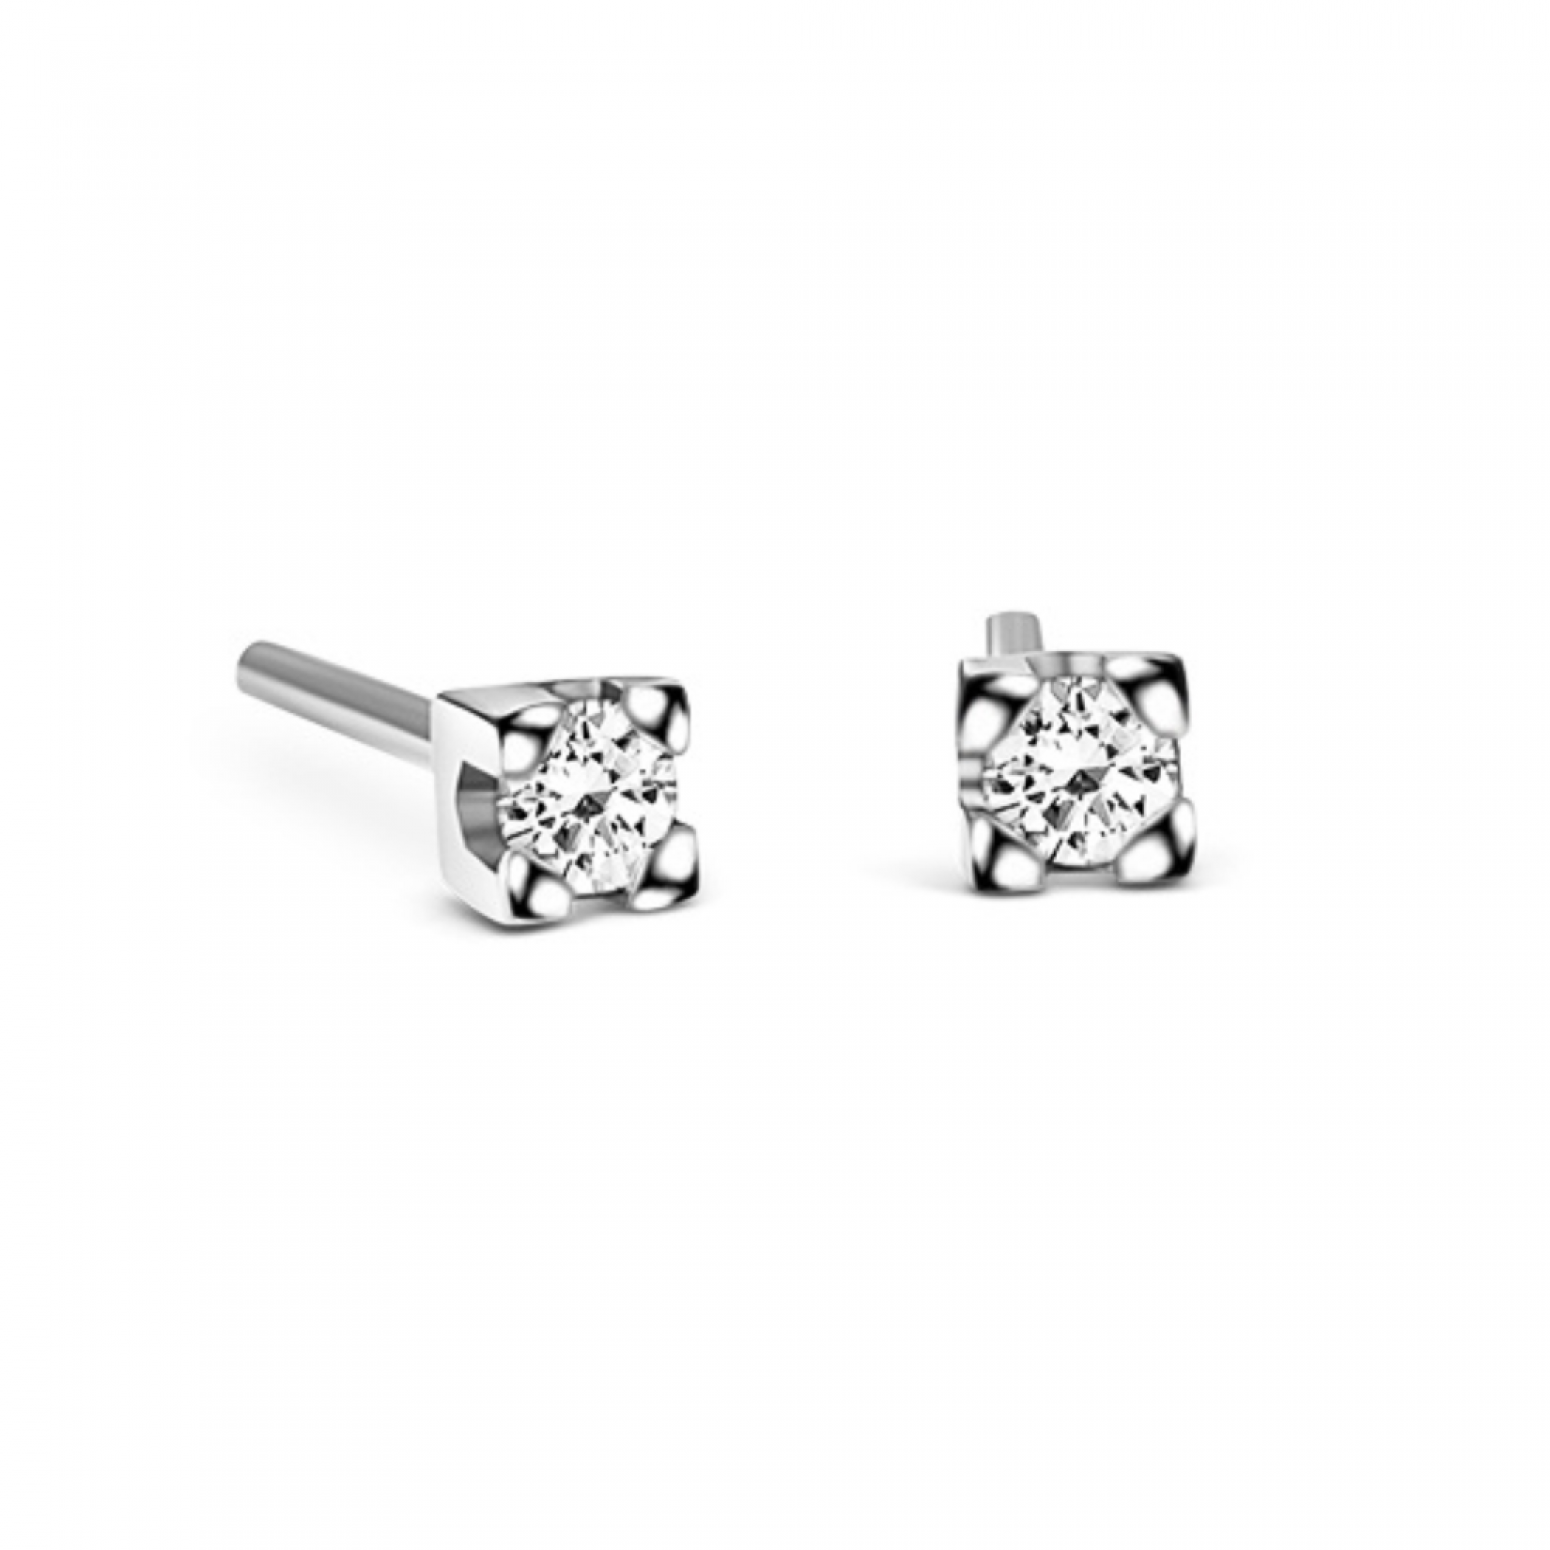 Μονόπετρα σκουλαρίκια, Κ18 λευκόχρυσο με διαμάντια 0.10ct, VS1, G sk3793 ΣΚΟΥΛΑΡΙΚΙΑ Κοσμηματα - chrilia.gr